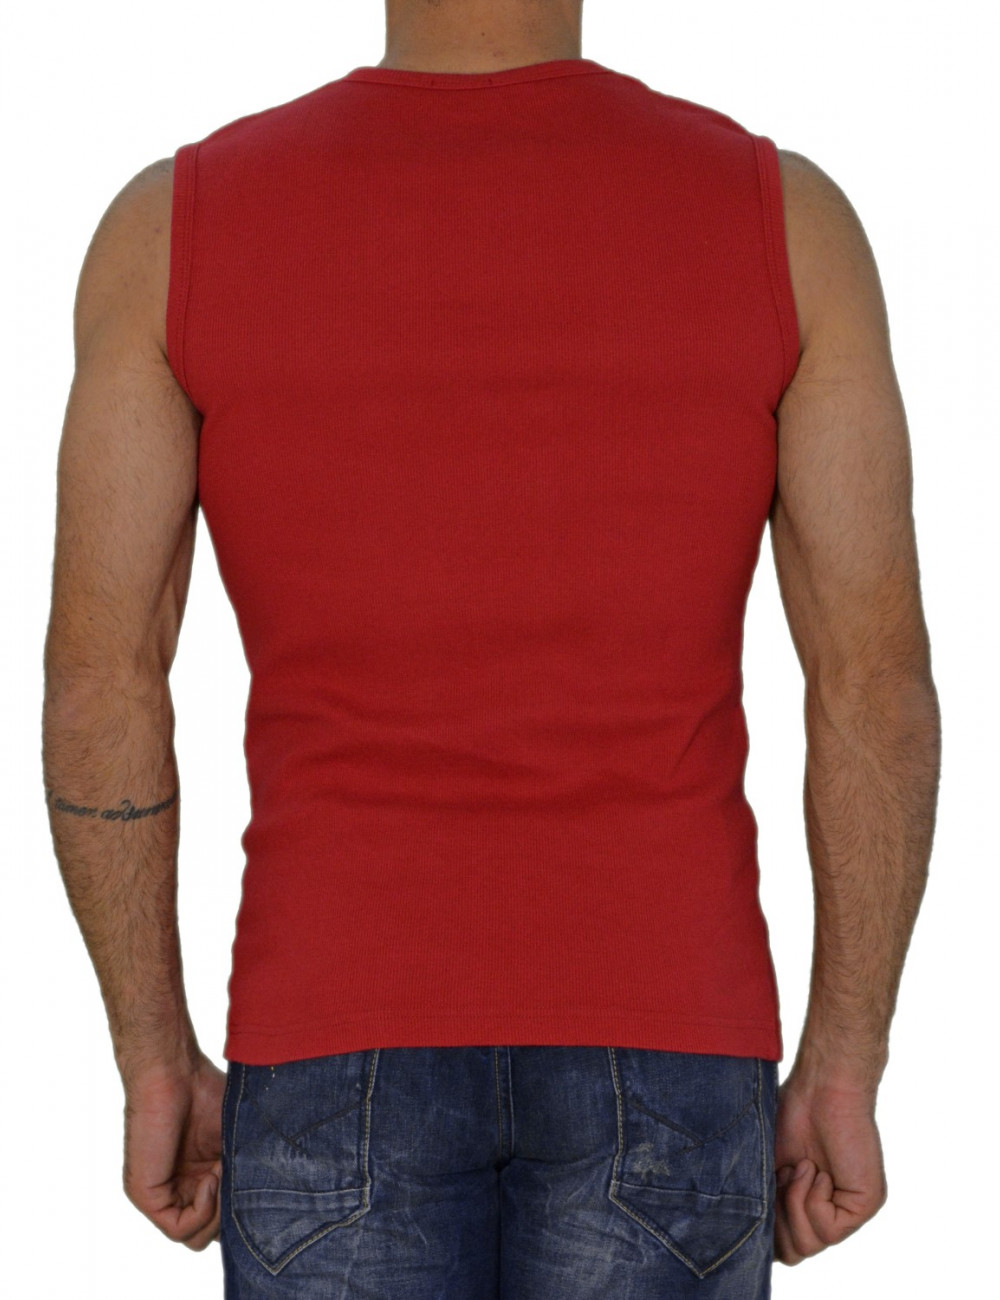 Ανδρική ριπ αμάνικη μπλούζα κόκκινη 025279